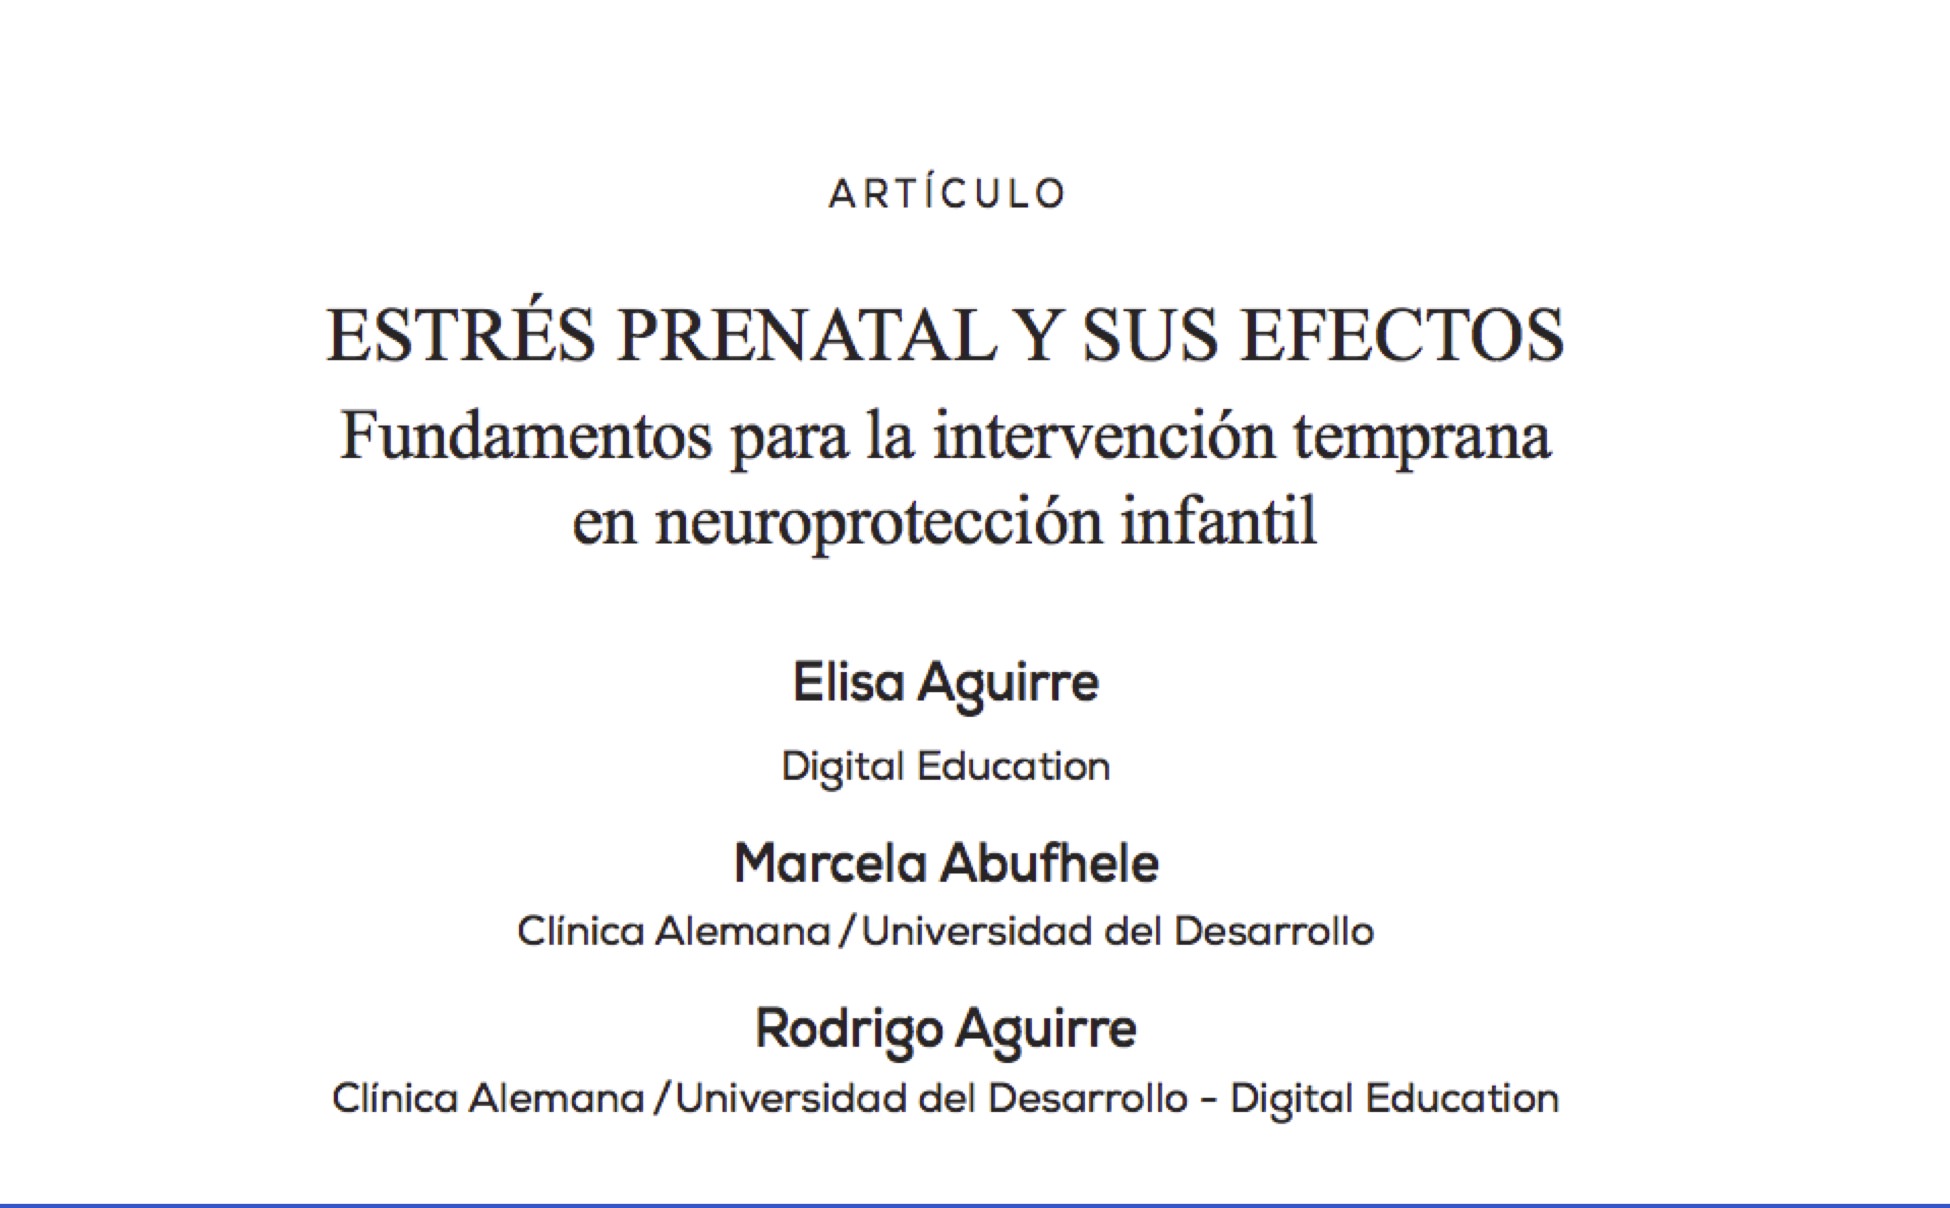 Estrés prenatal y sus efectos. Fundamentos para la intervención temprana en neuroprotección infantil